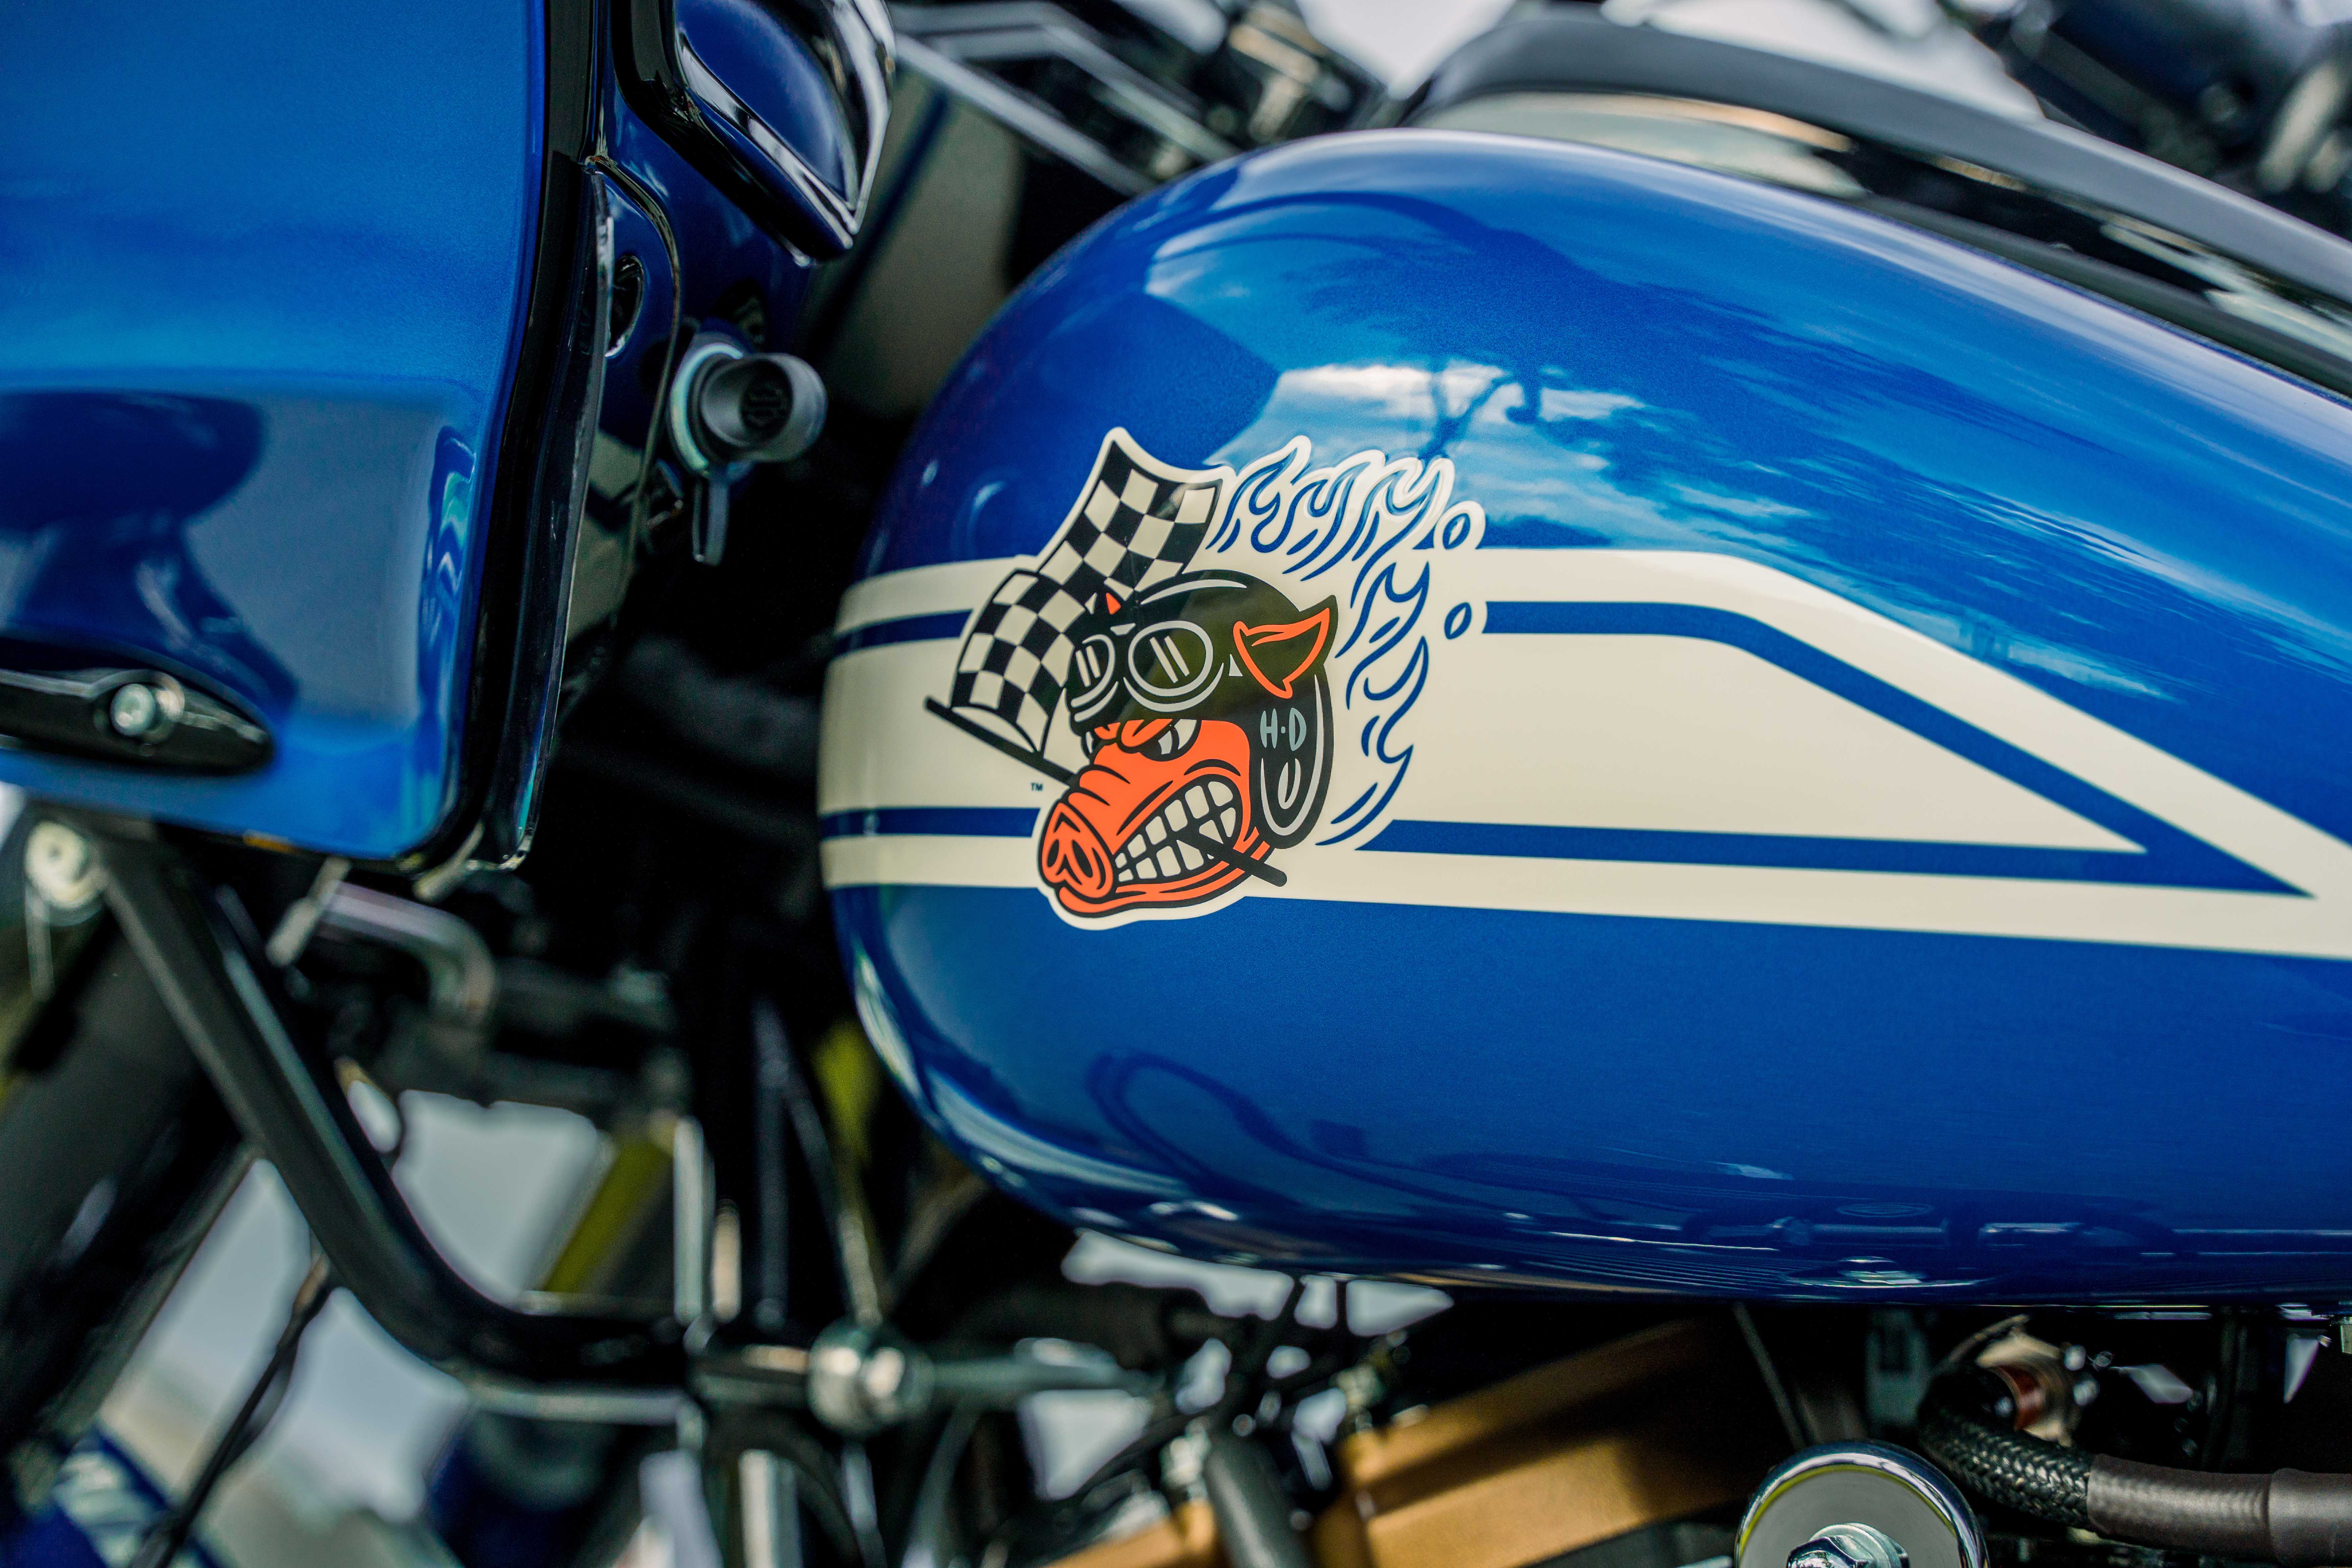 Chú heo Johnnie - Linh vật nổi tiếng trong lịch sử của Harley-Davidson Logo biểu tượng Fast Johnnie phía bên trái của bình xăng 2.jpg